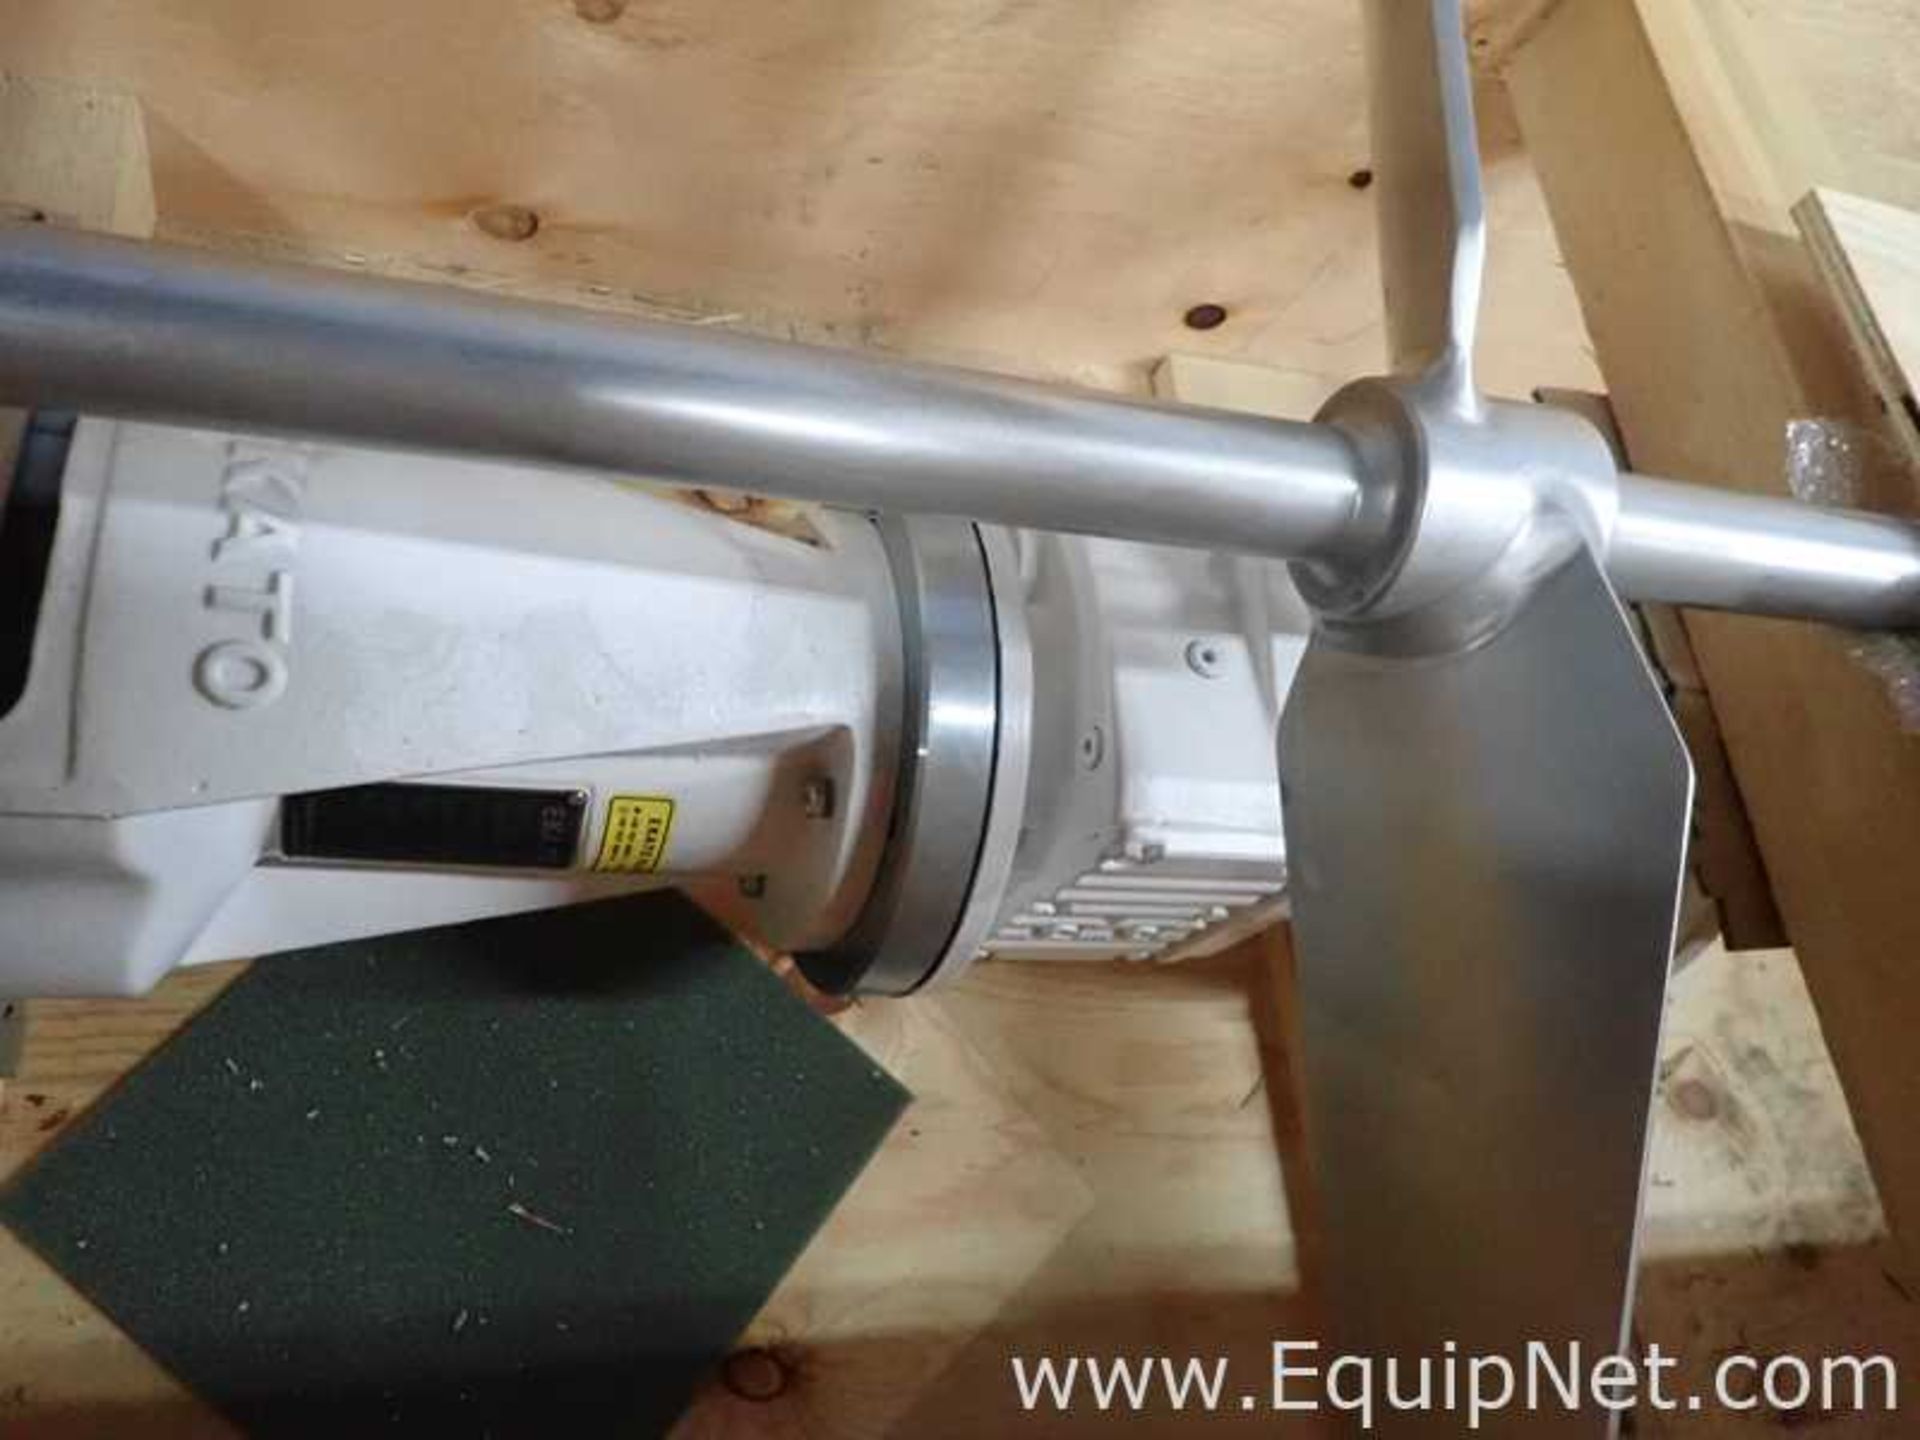 Unused Ekato Fluid EM 2040 Industrial Agitator with Dual Blade Shaft - Image 6 of 7